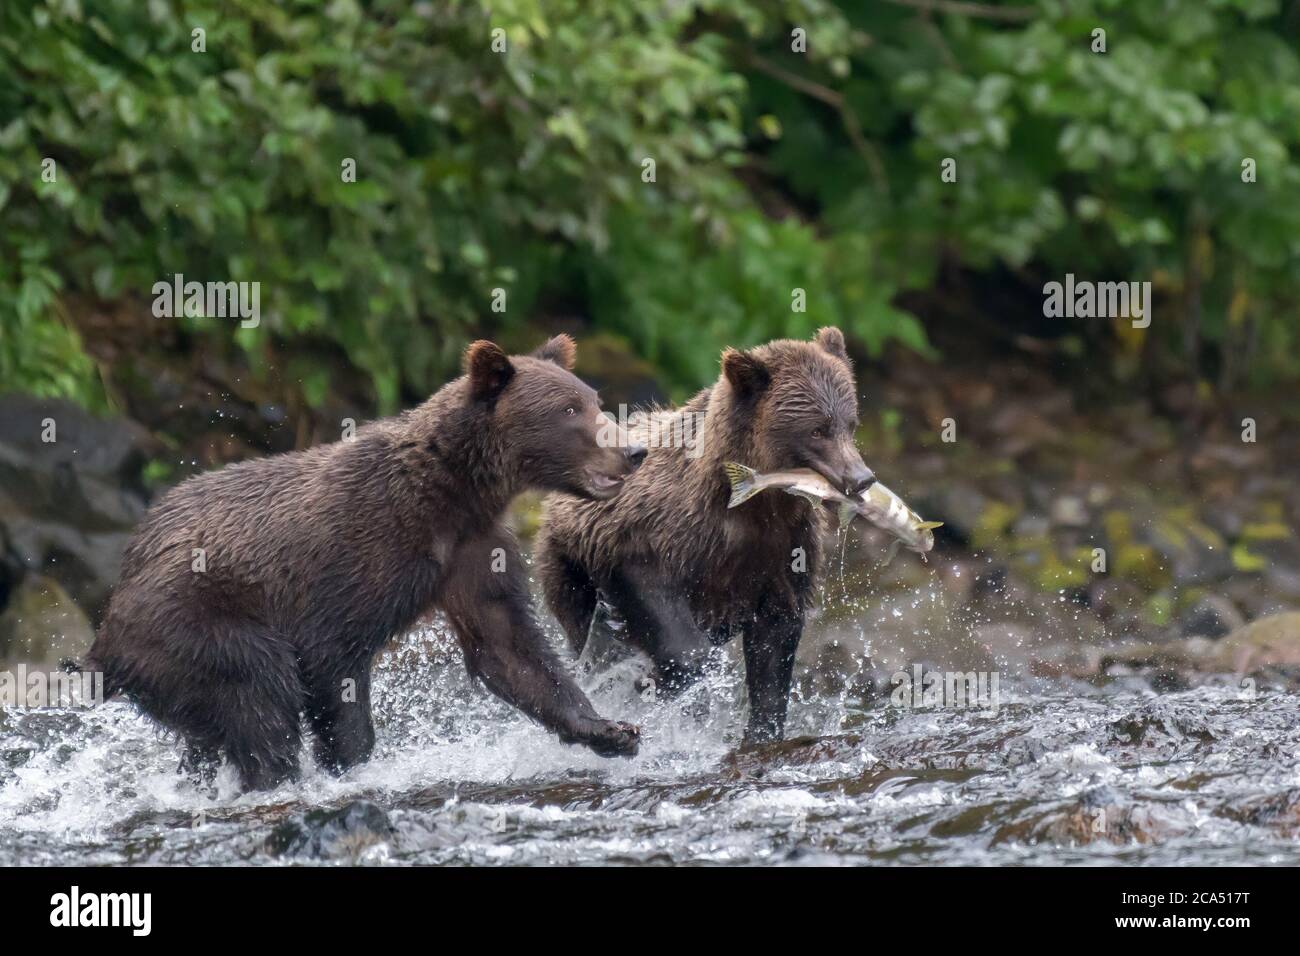 Ours brun côtier (Grizzly) (Ursus arctos) traversant une rivière transportant un saumon avec un autre ours qui coule le long de la rivière. Banque D'Images